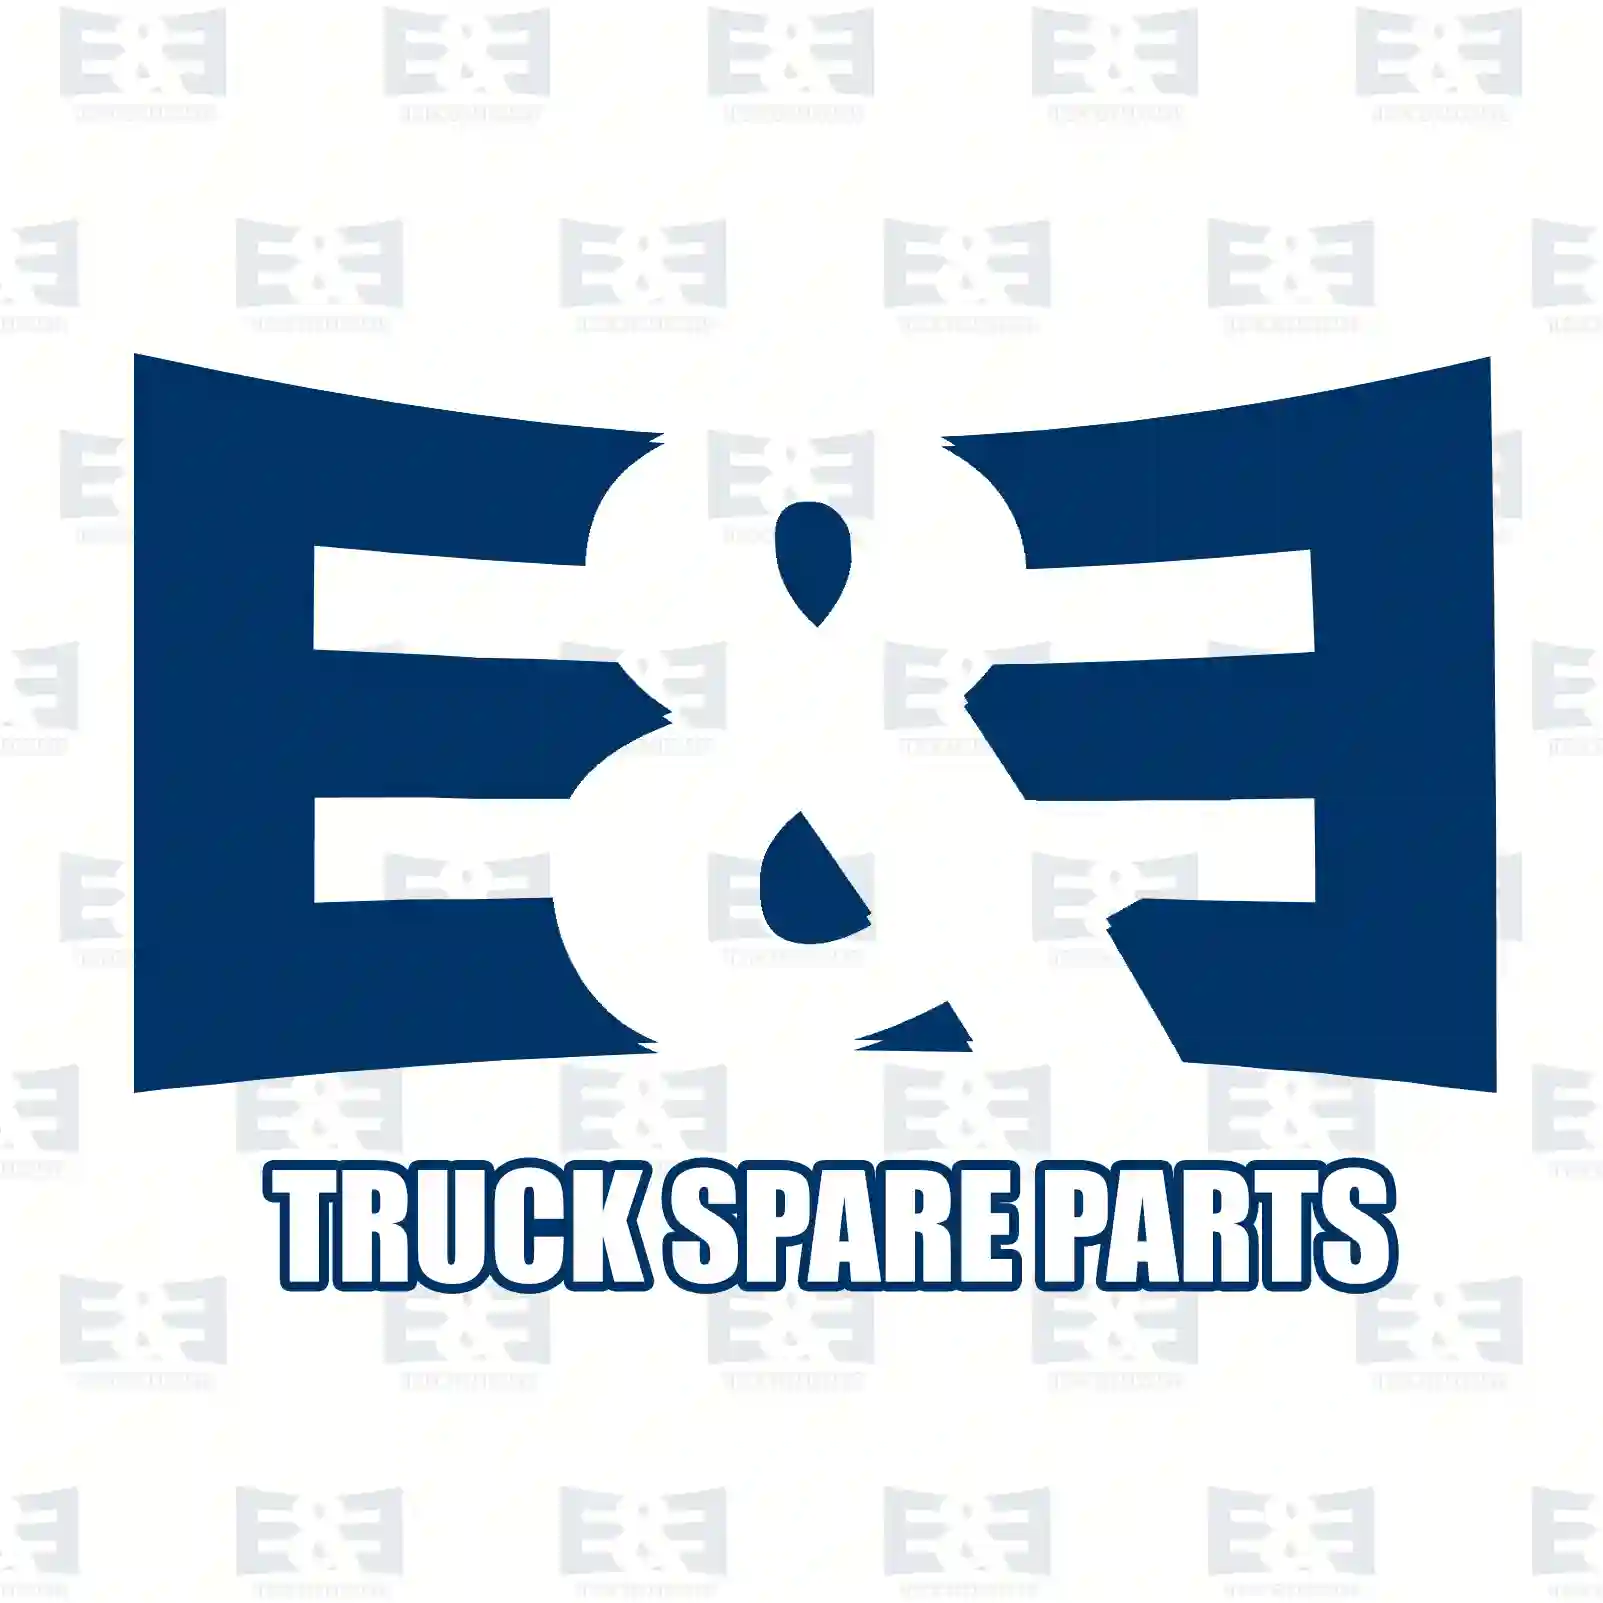 Gearbox mounting, 2E2279219, 2368509, GK31-6068-BA ||  2E2279219 E&E Truck Spare Parts | Truck Spare Parts, Auotomotive Spare Parts Gearbox mounting, 2E2279219, 2368509, GK31-6068-BA ||  2E2279219 E&E Truck Spare Parts | Truck Spare Parts, Auotomotive Spare Parts